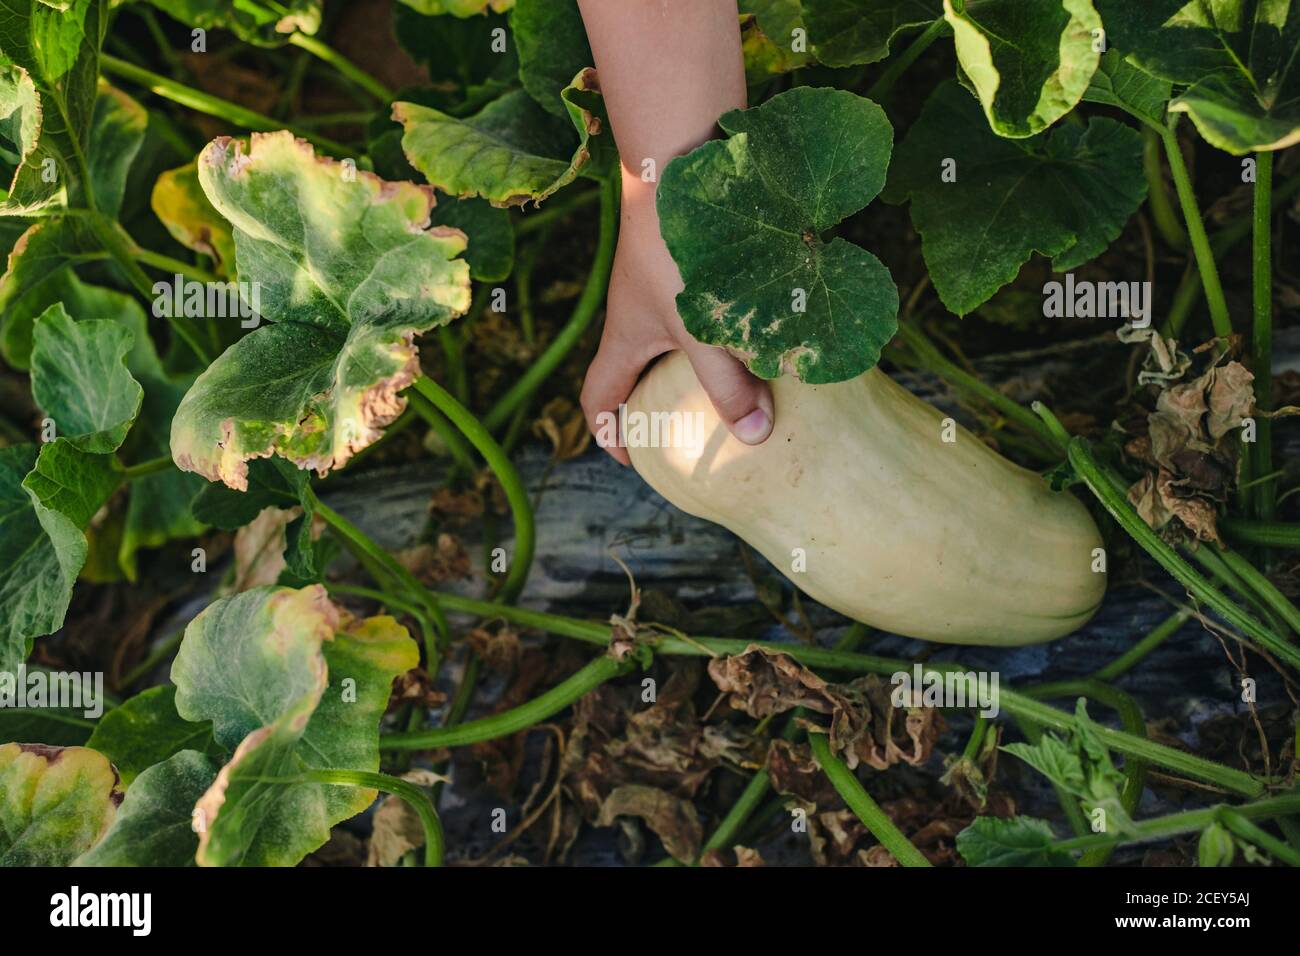 Vista superior de la cosecha irreconocible niño recogiendo calabaza amarilla madura de cama de verduras en el jardín de verano Foto de stock